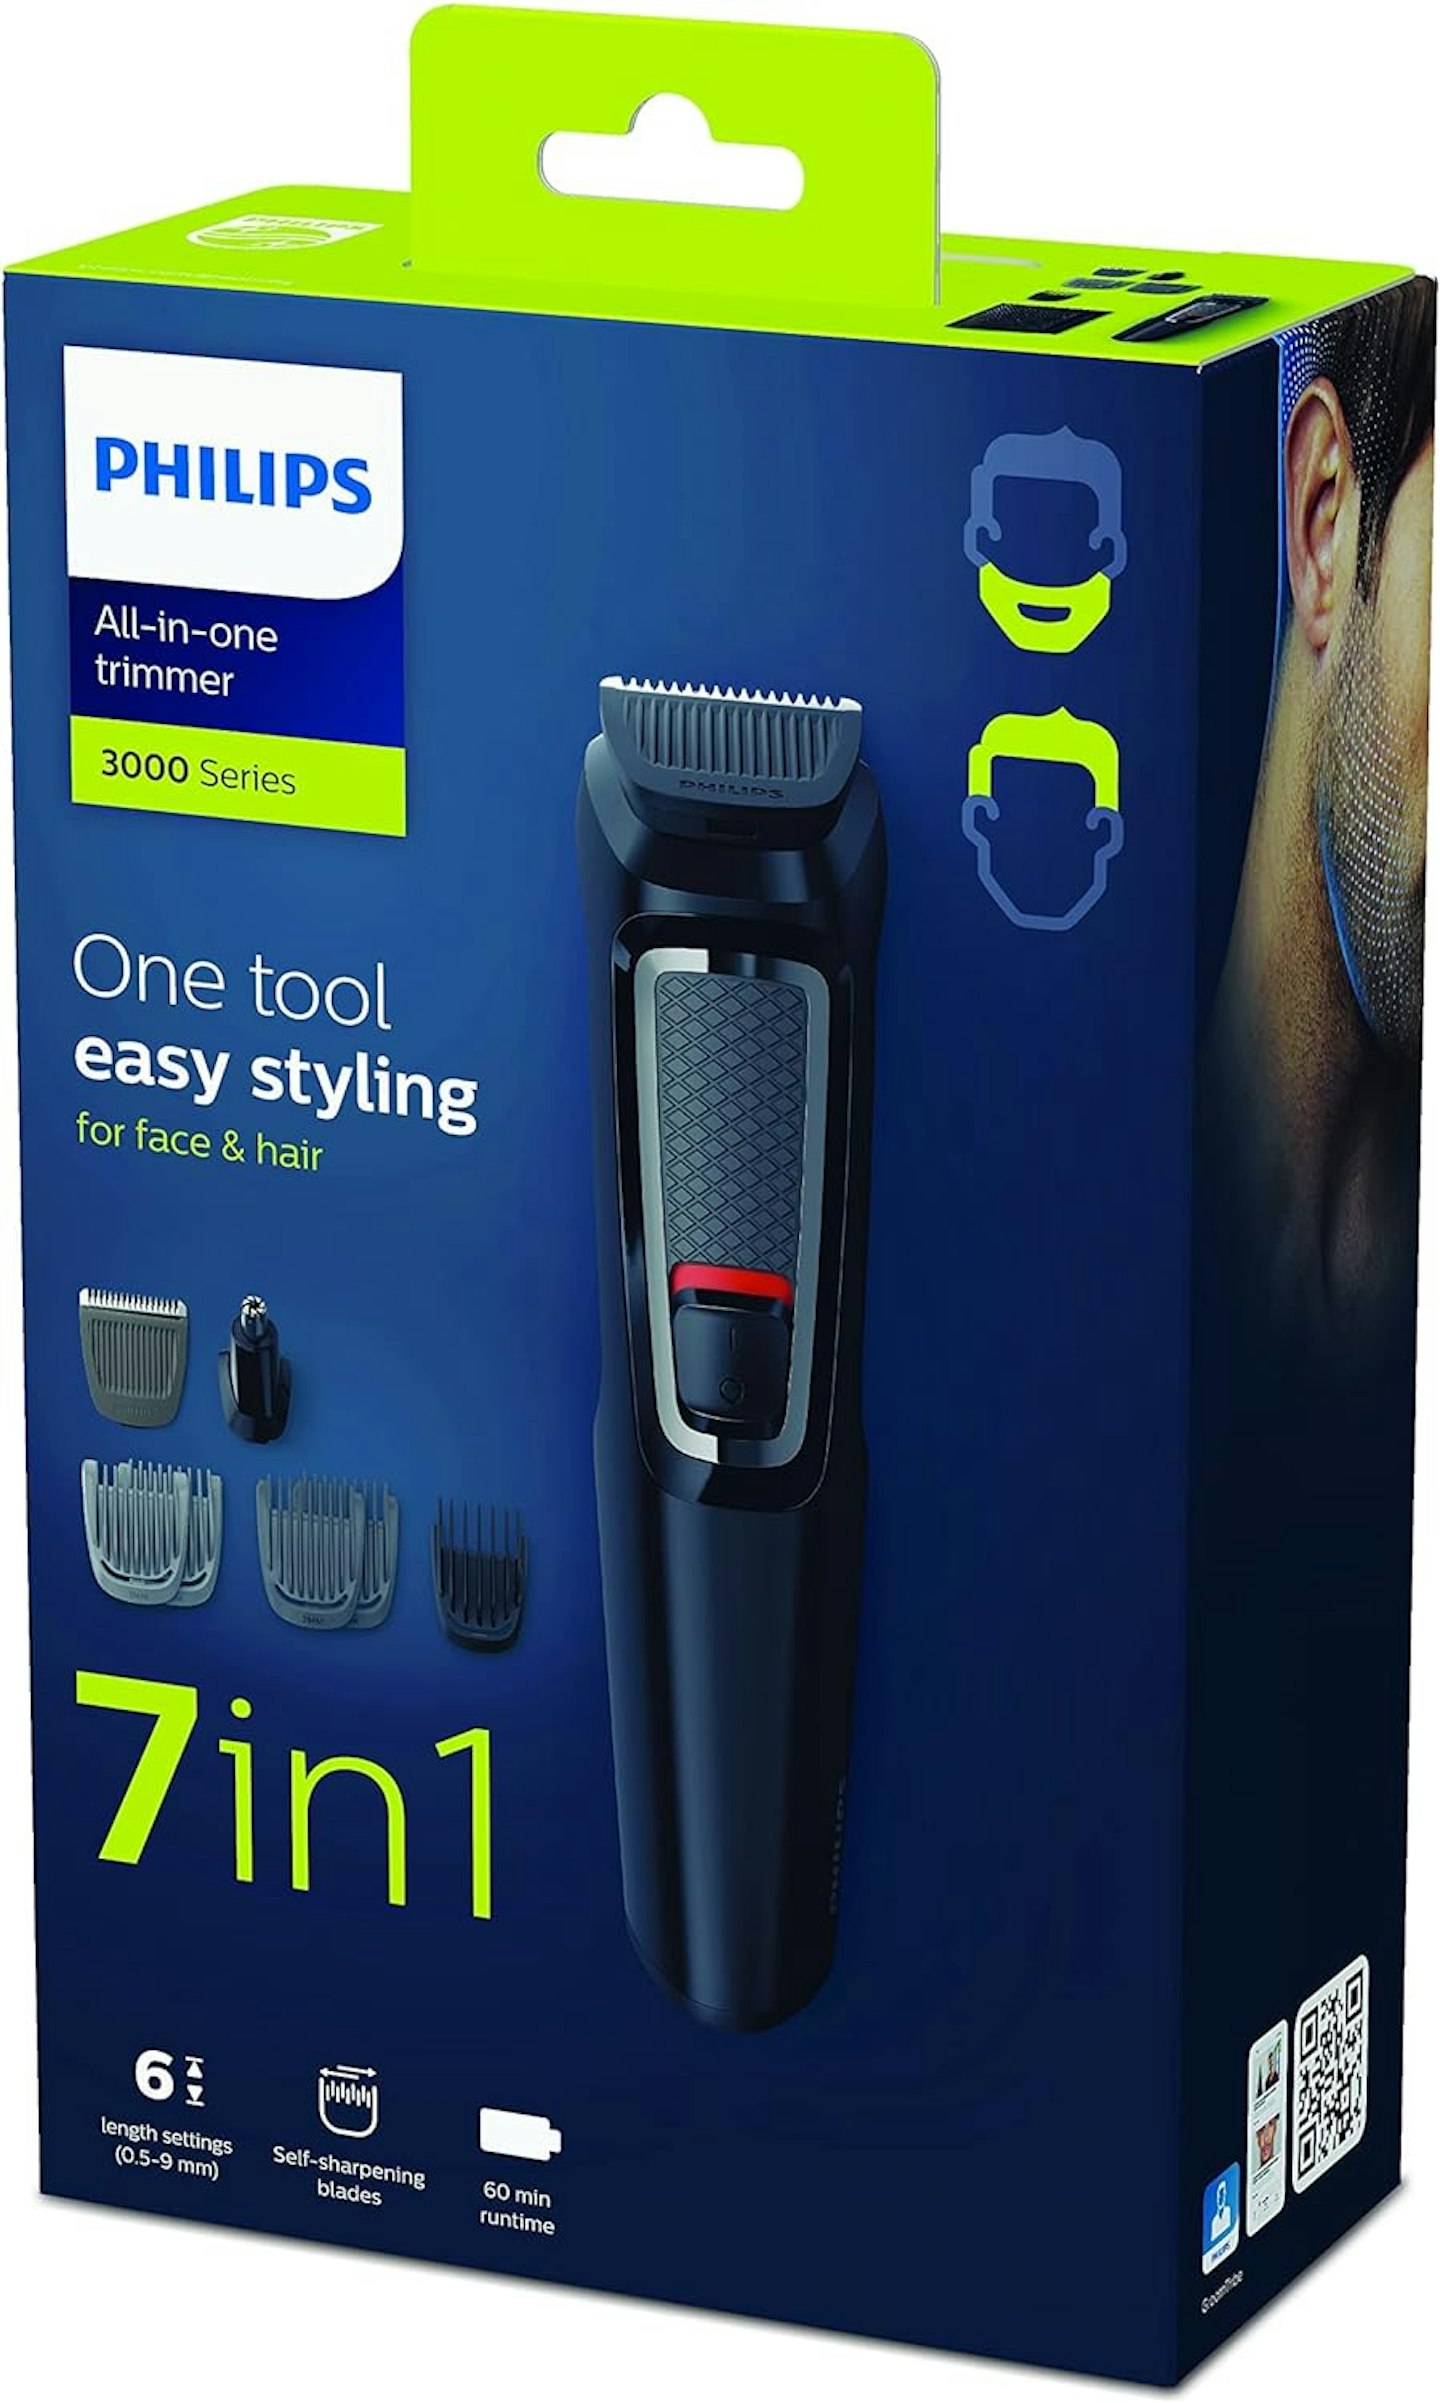 phillips hair trimmer 